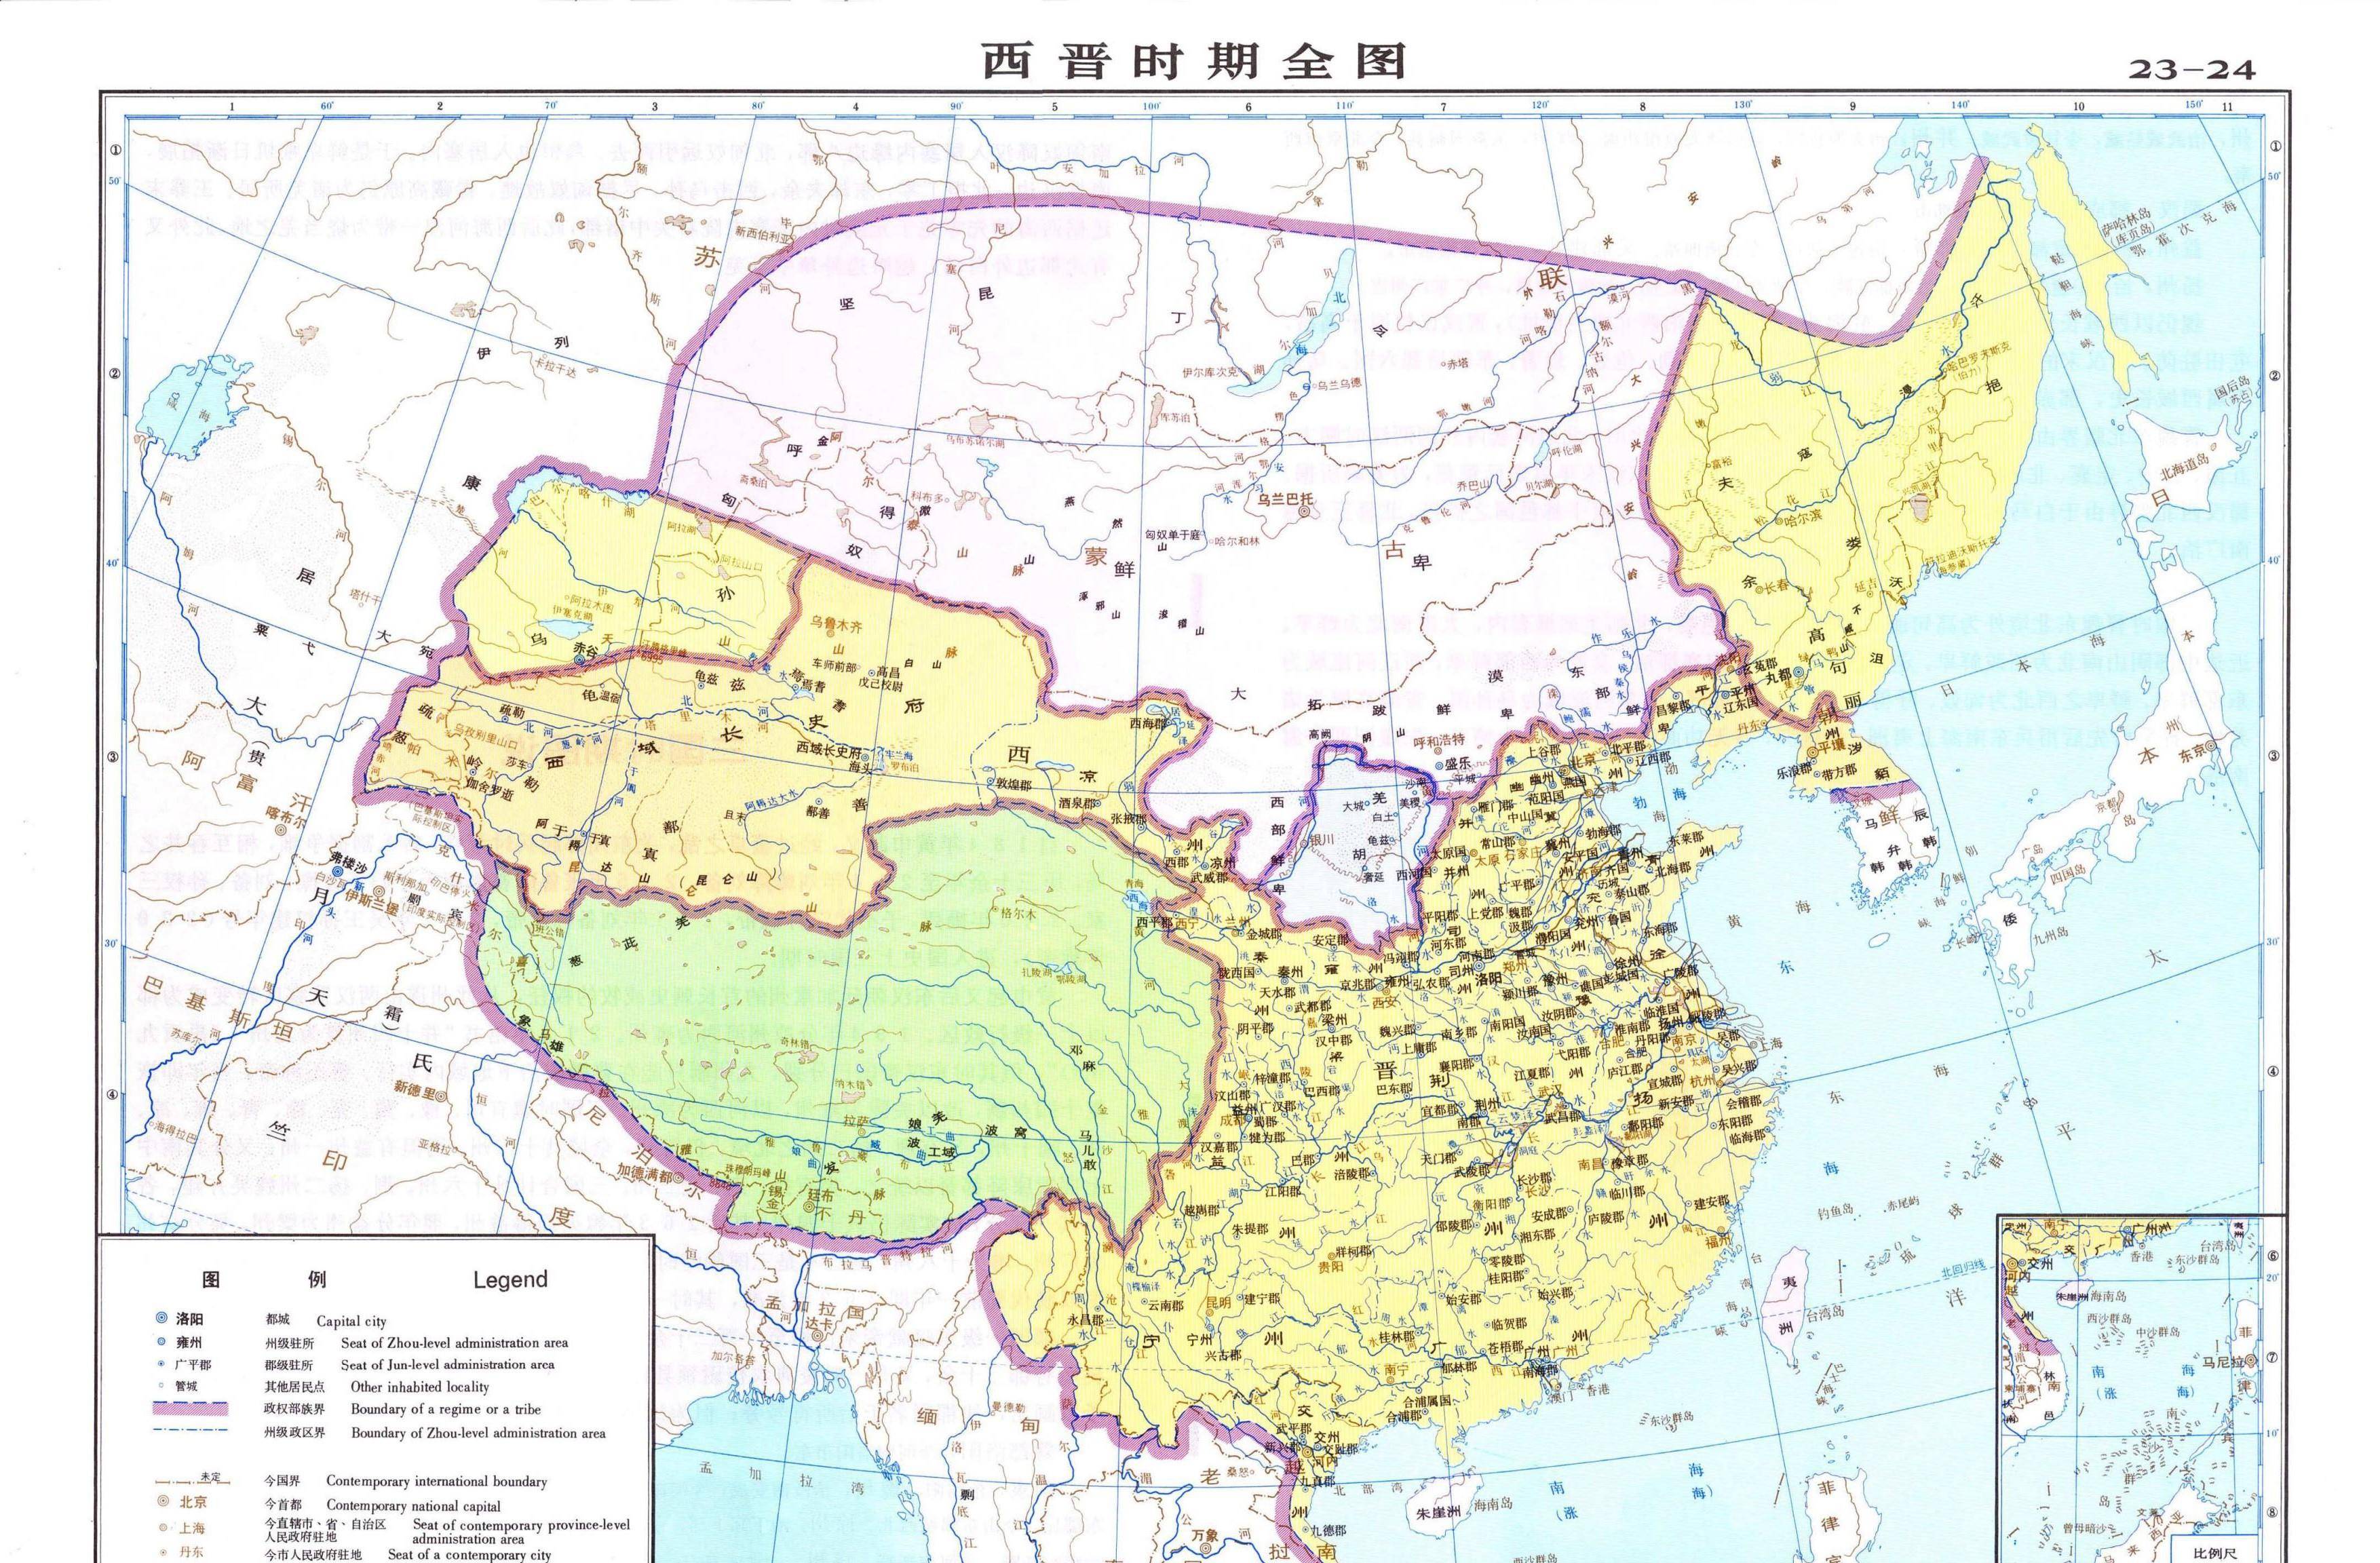 中国历史上各个朝代:从夏朝到清朝领土地图详细一览